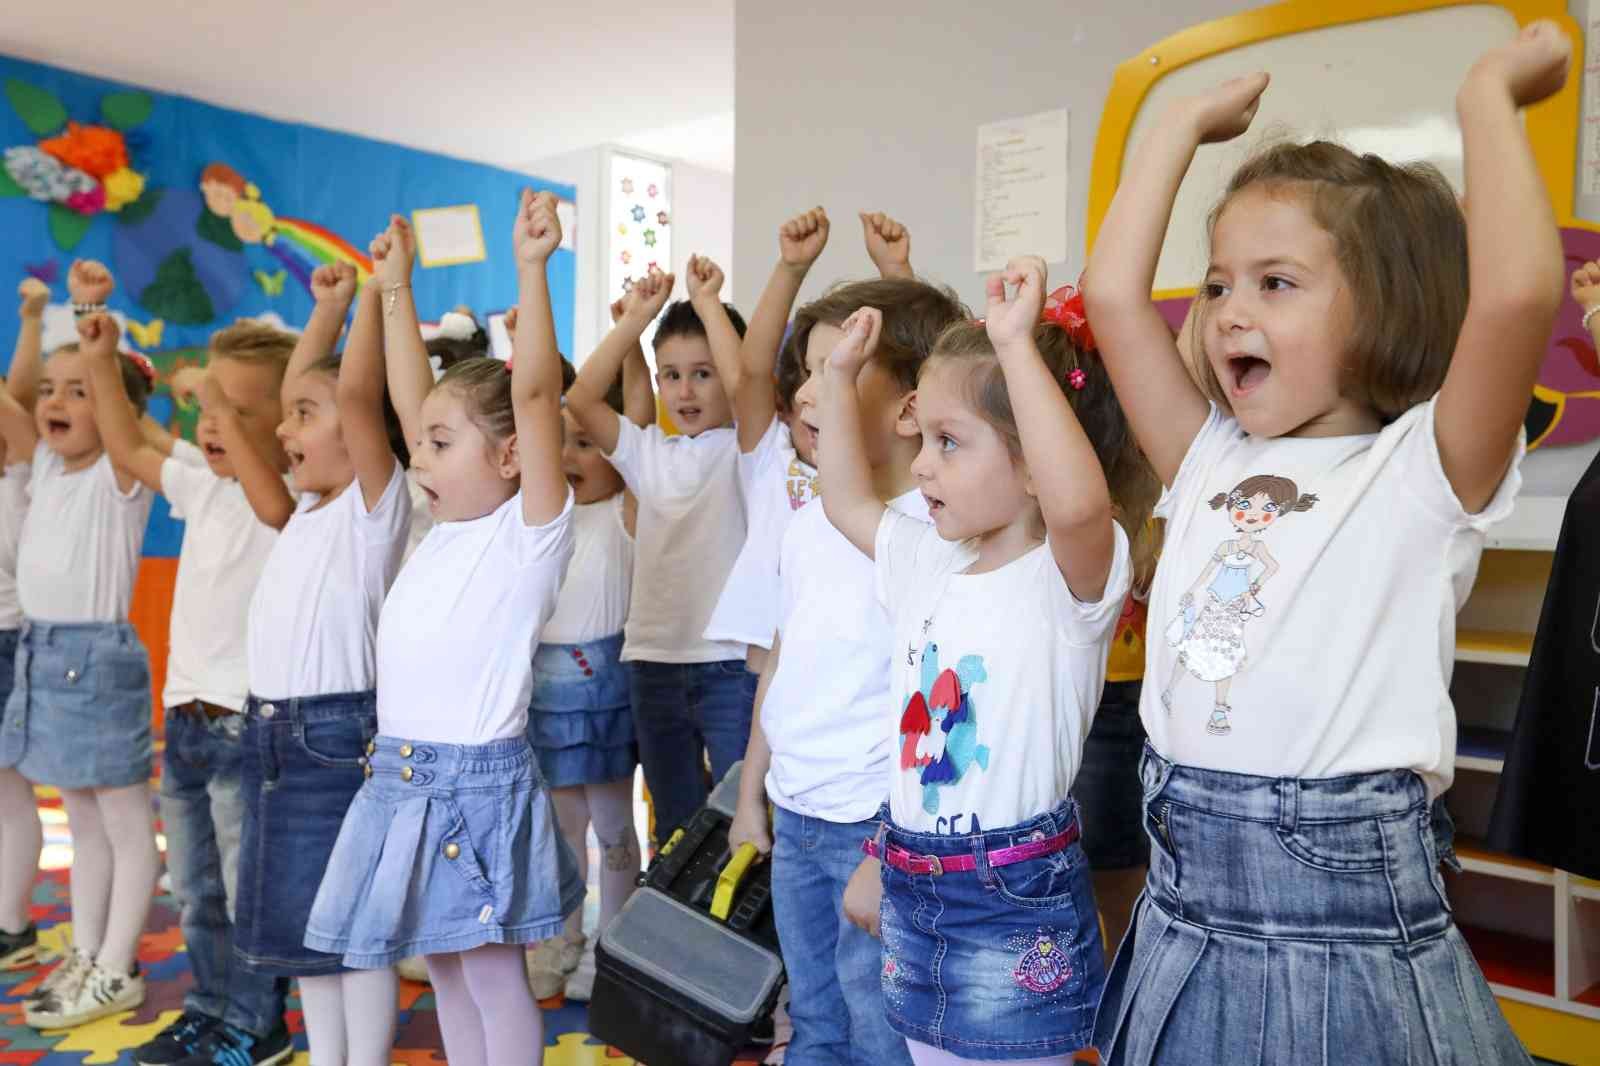 Buca Belediyesi yarı zamanlı ücretsiz eğitim merkezlerini açıyor #izmir